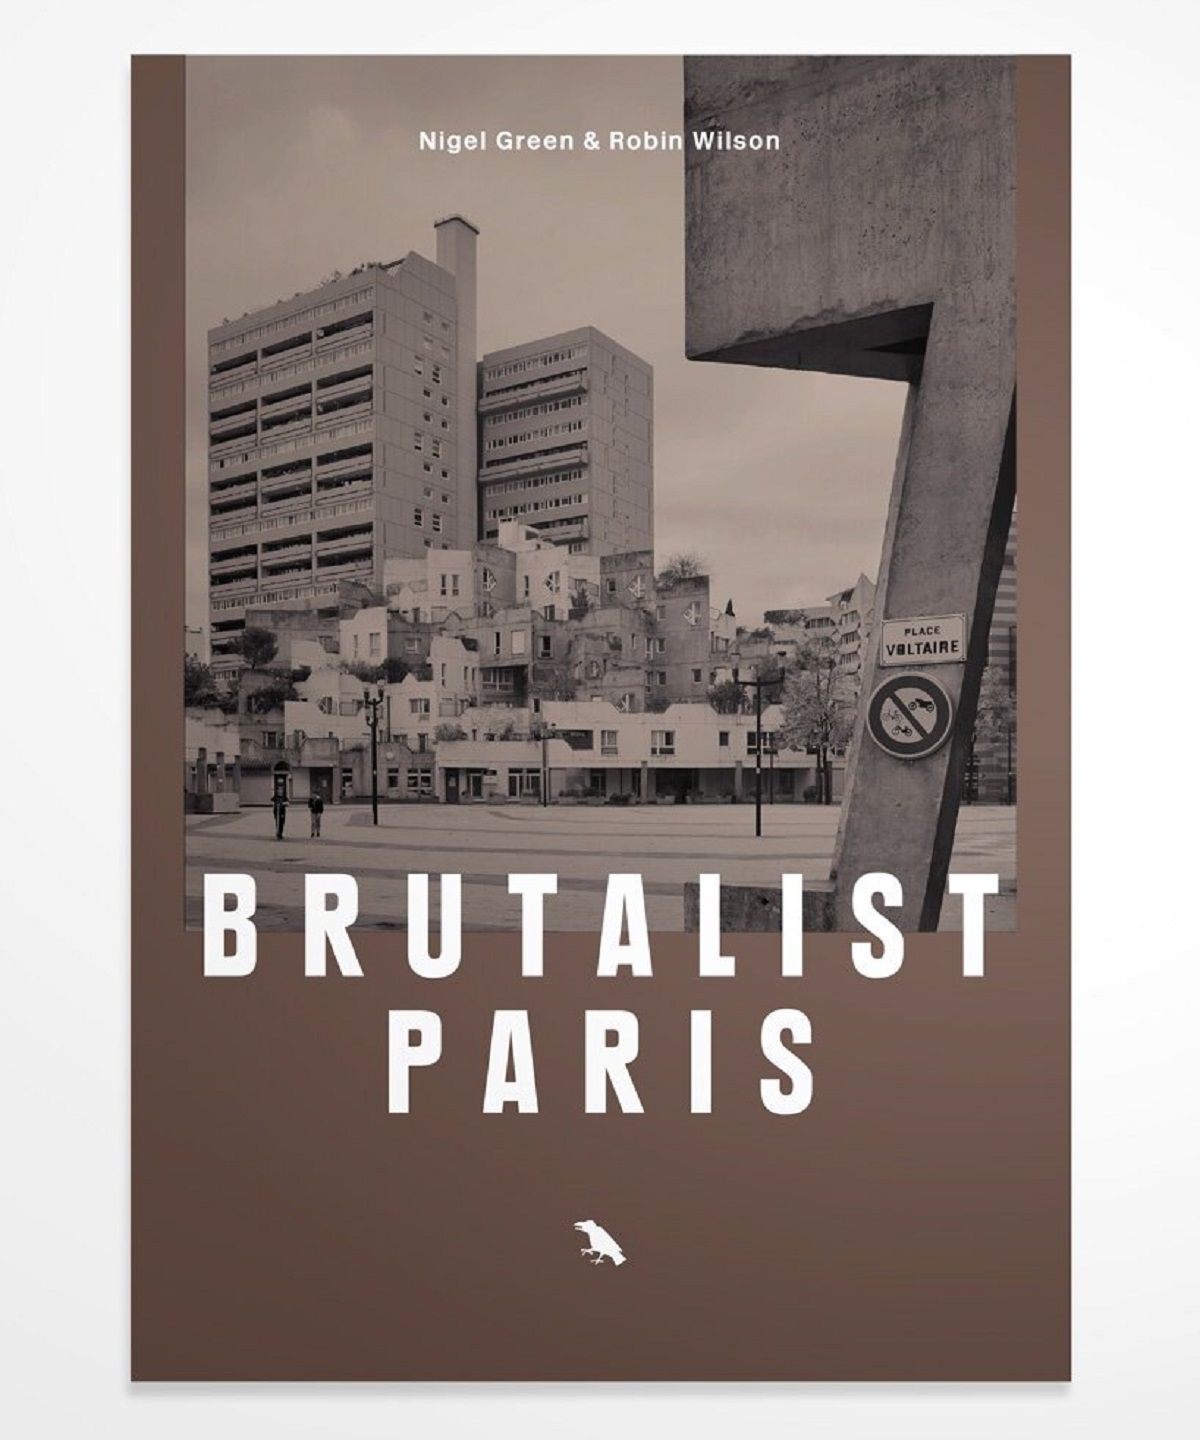 Cuốn sách “Brutalist Paris” đang được gây quỹ trên kickstarter